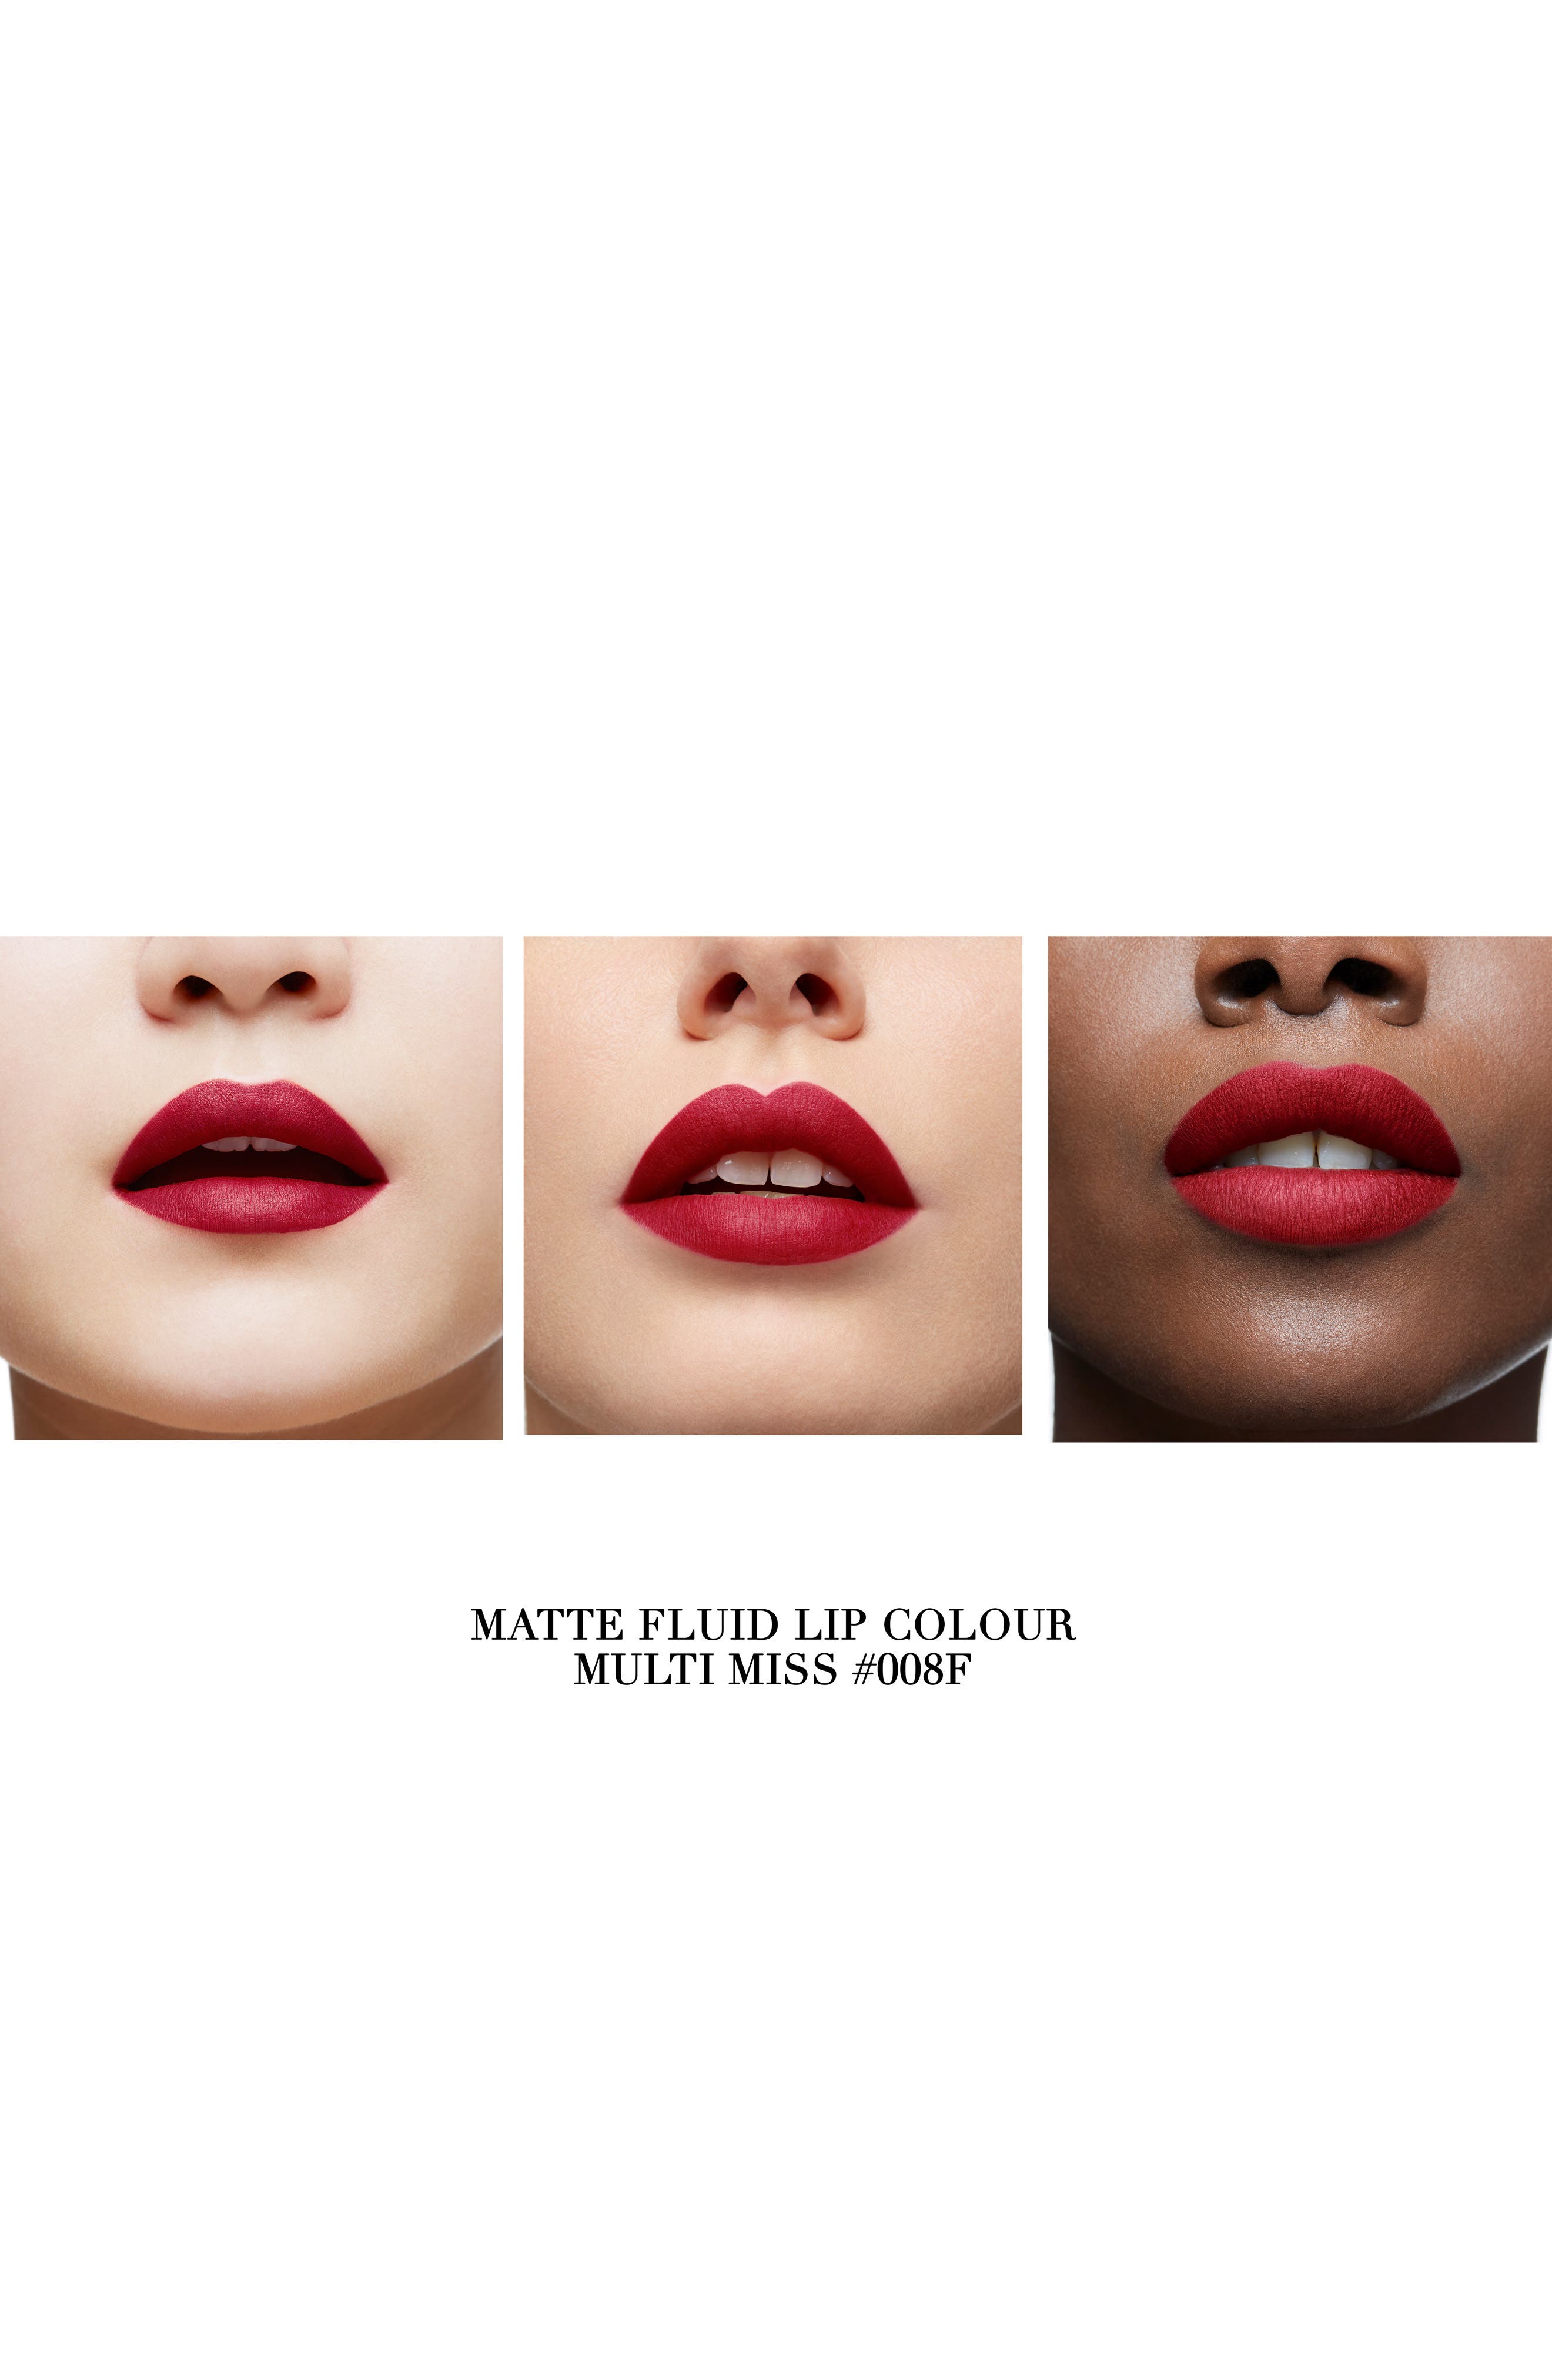 Rouge Louboutin Matte Fluids - Matte liquid lipstick - Angels